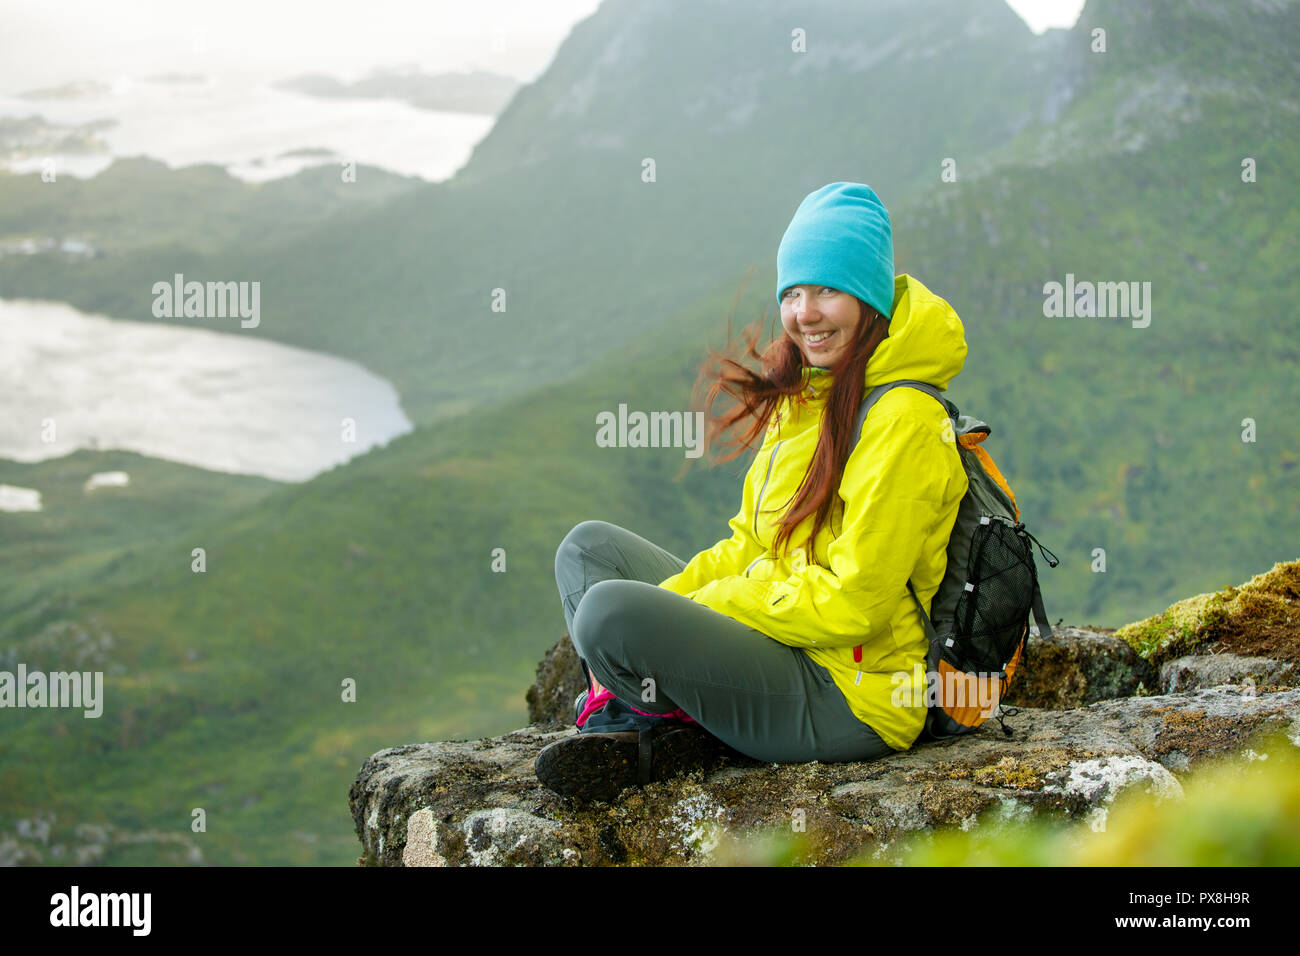 Immagine del turista felice ragazza con zaino seduti sulla cima della montagna in sullo sfondo di un paesaggio pittoresco Foto Stock